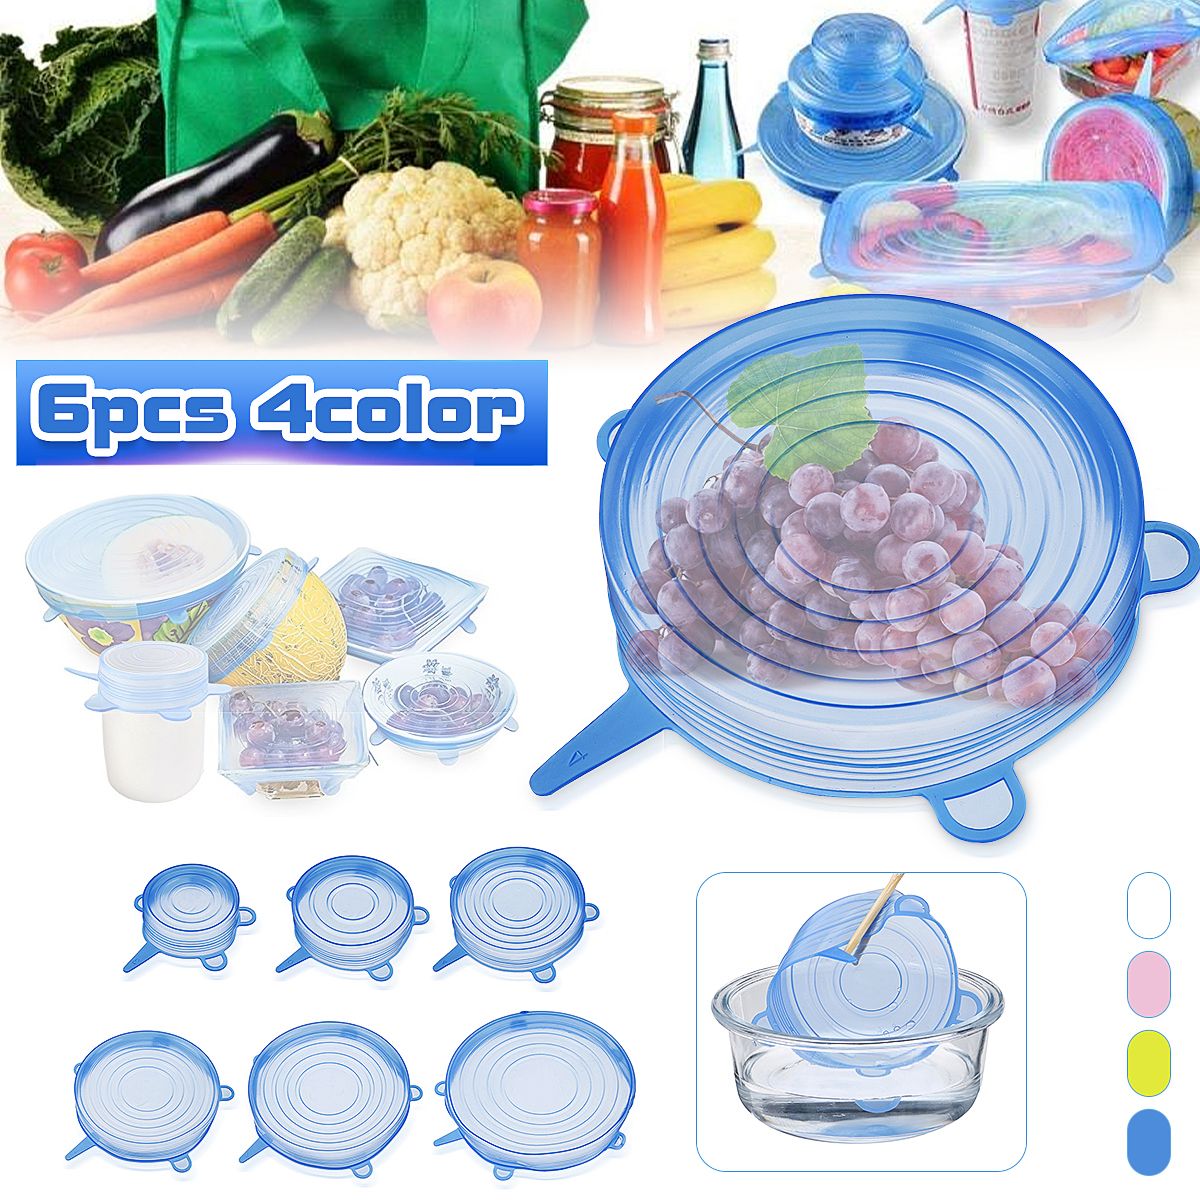 6Pcsset-Silicone-Stretch-Suction-Pot-Lids-Kitchen-Cover-Pan-Bowl-Stopper-Cap-1633242